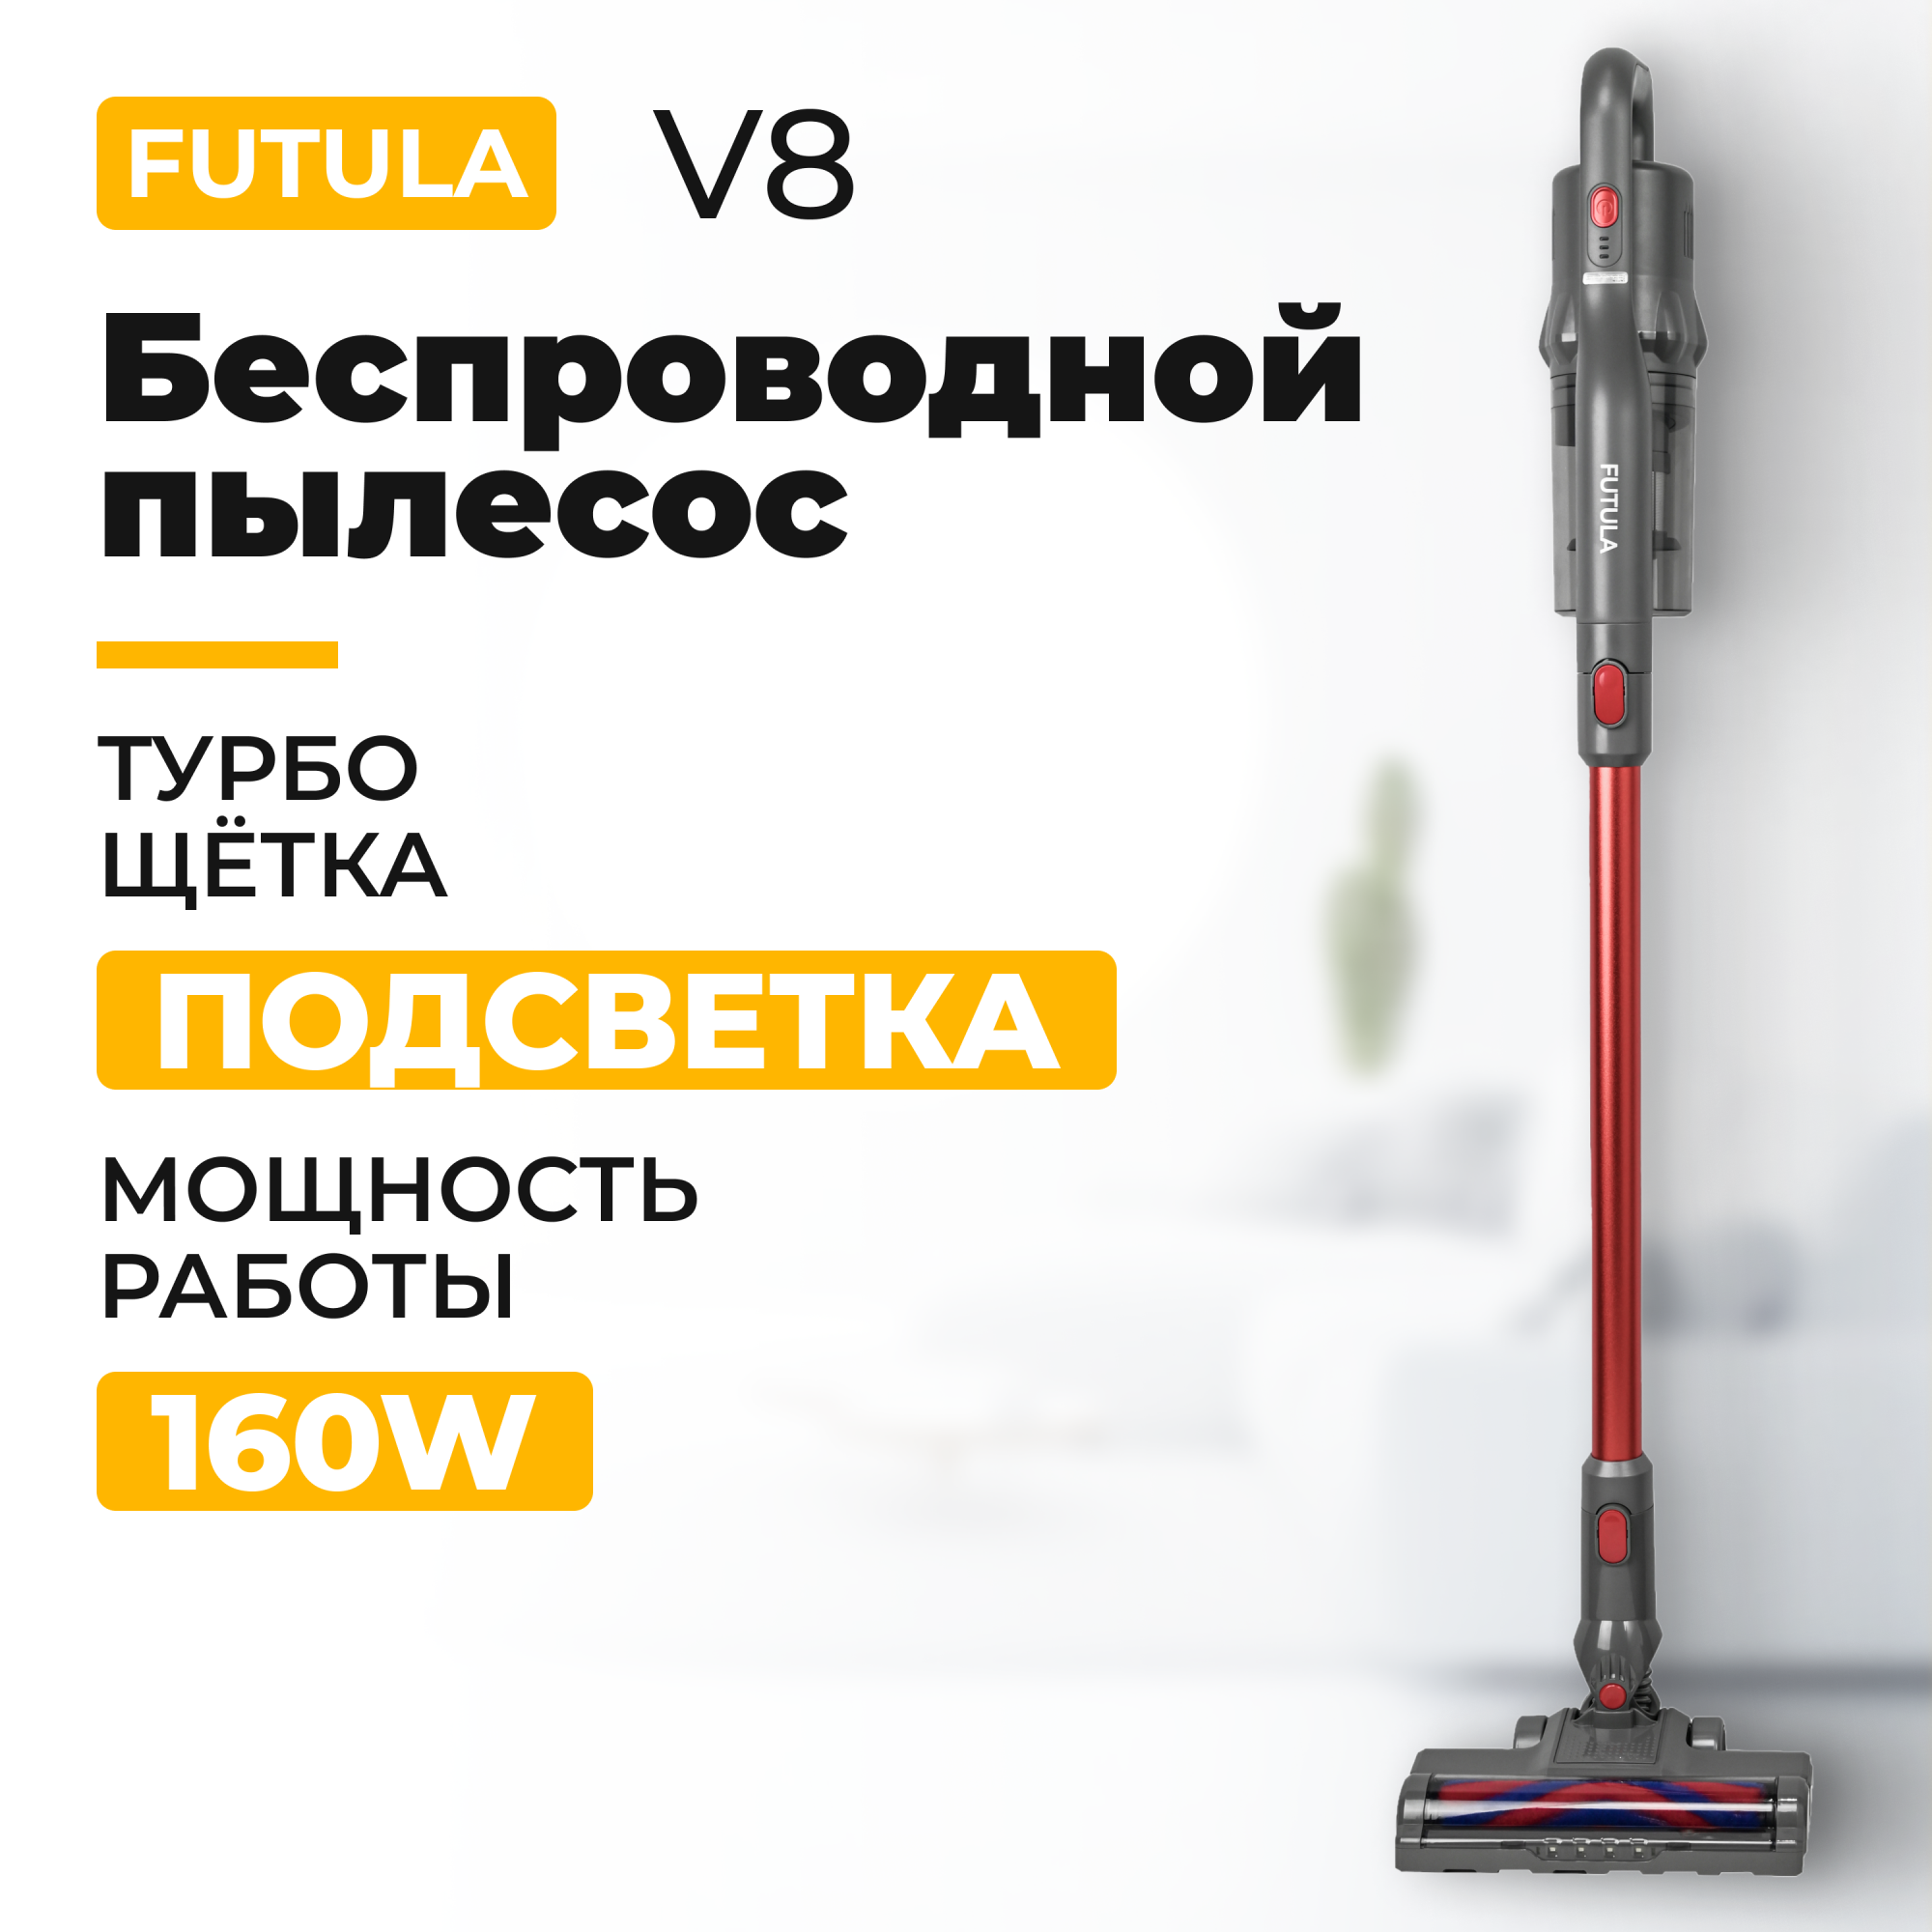 Пылесос Futula V8 красный, серый, купить в Москве, цены в интернет-магазинах на Мегамаркет